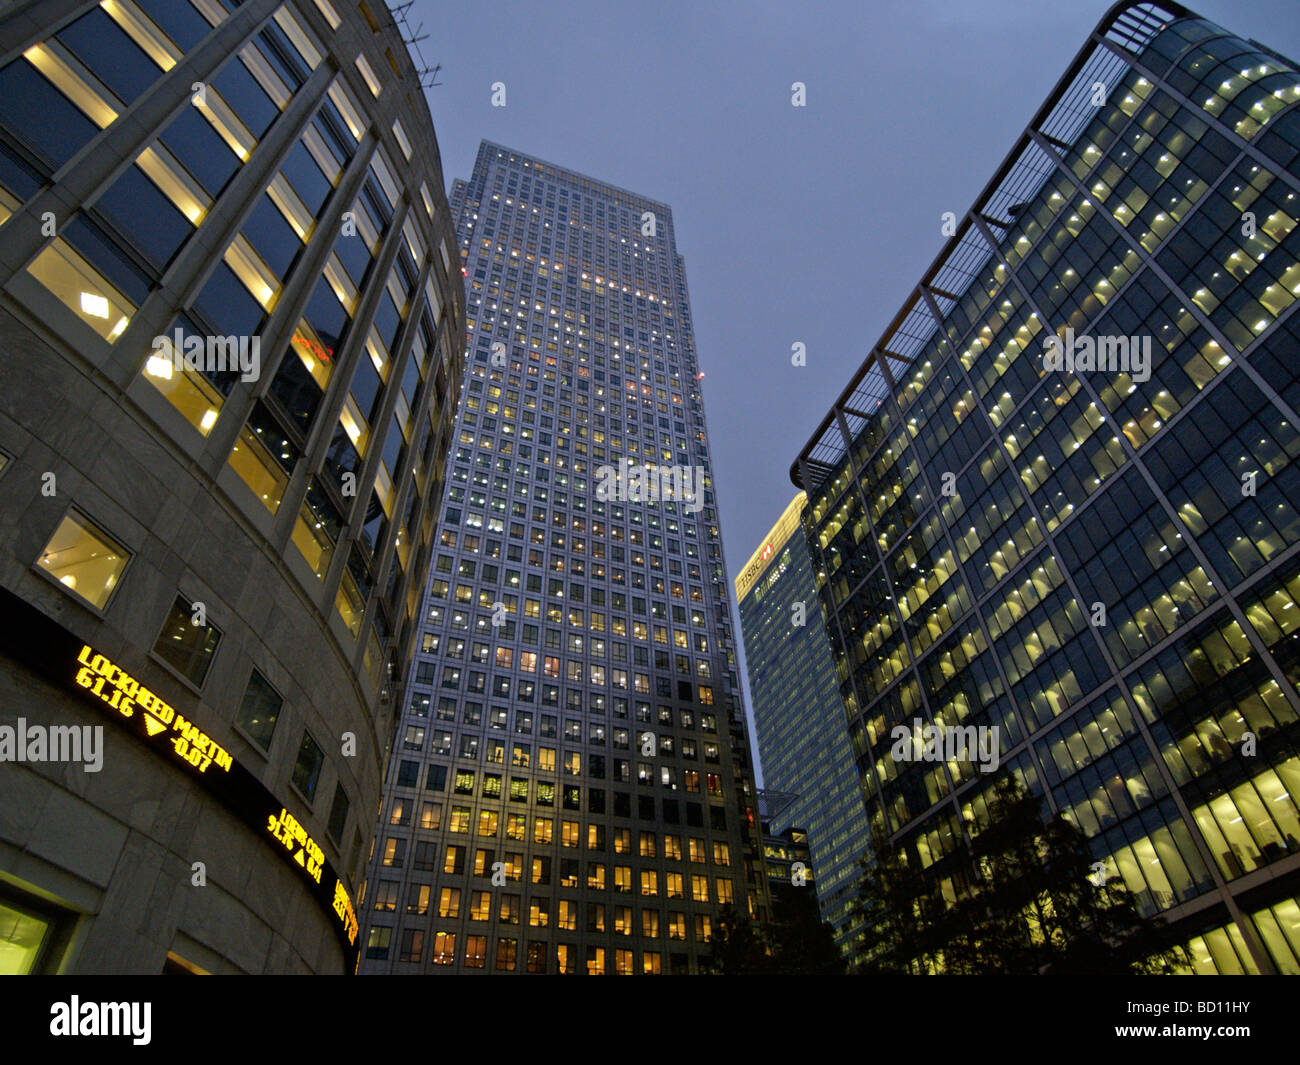 Les immeubles de bureaux avec stock market ticker Docklands Canary Wharf London UK Banque D'Images